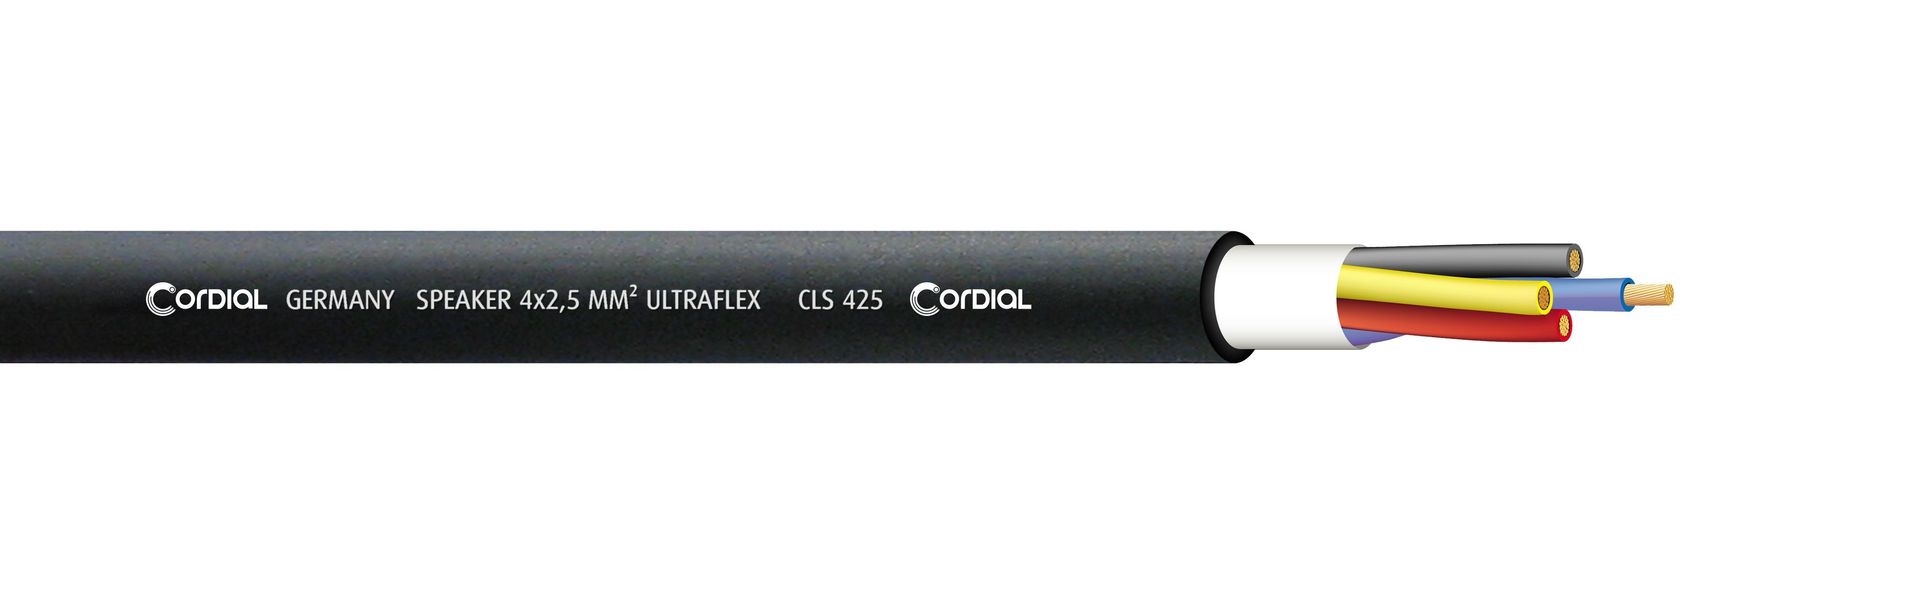 Cordial CLS 425 Lautsprecherkabel schwarz 4x2,50 qmm, Meterware Highflex